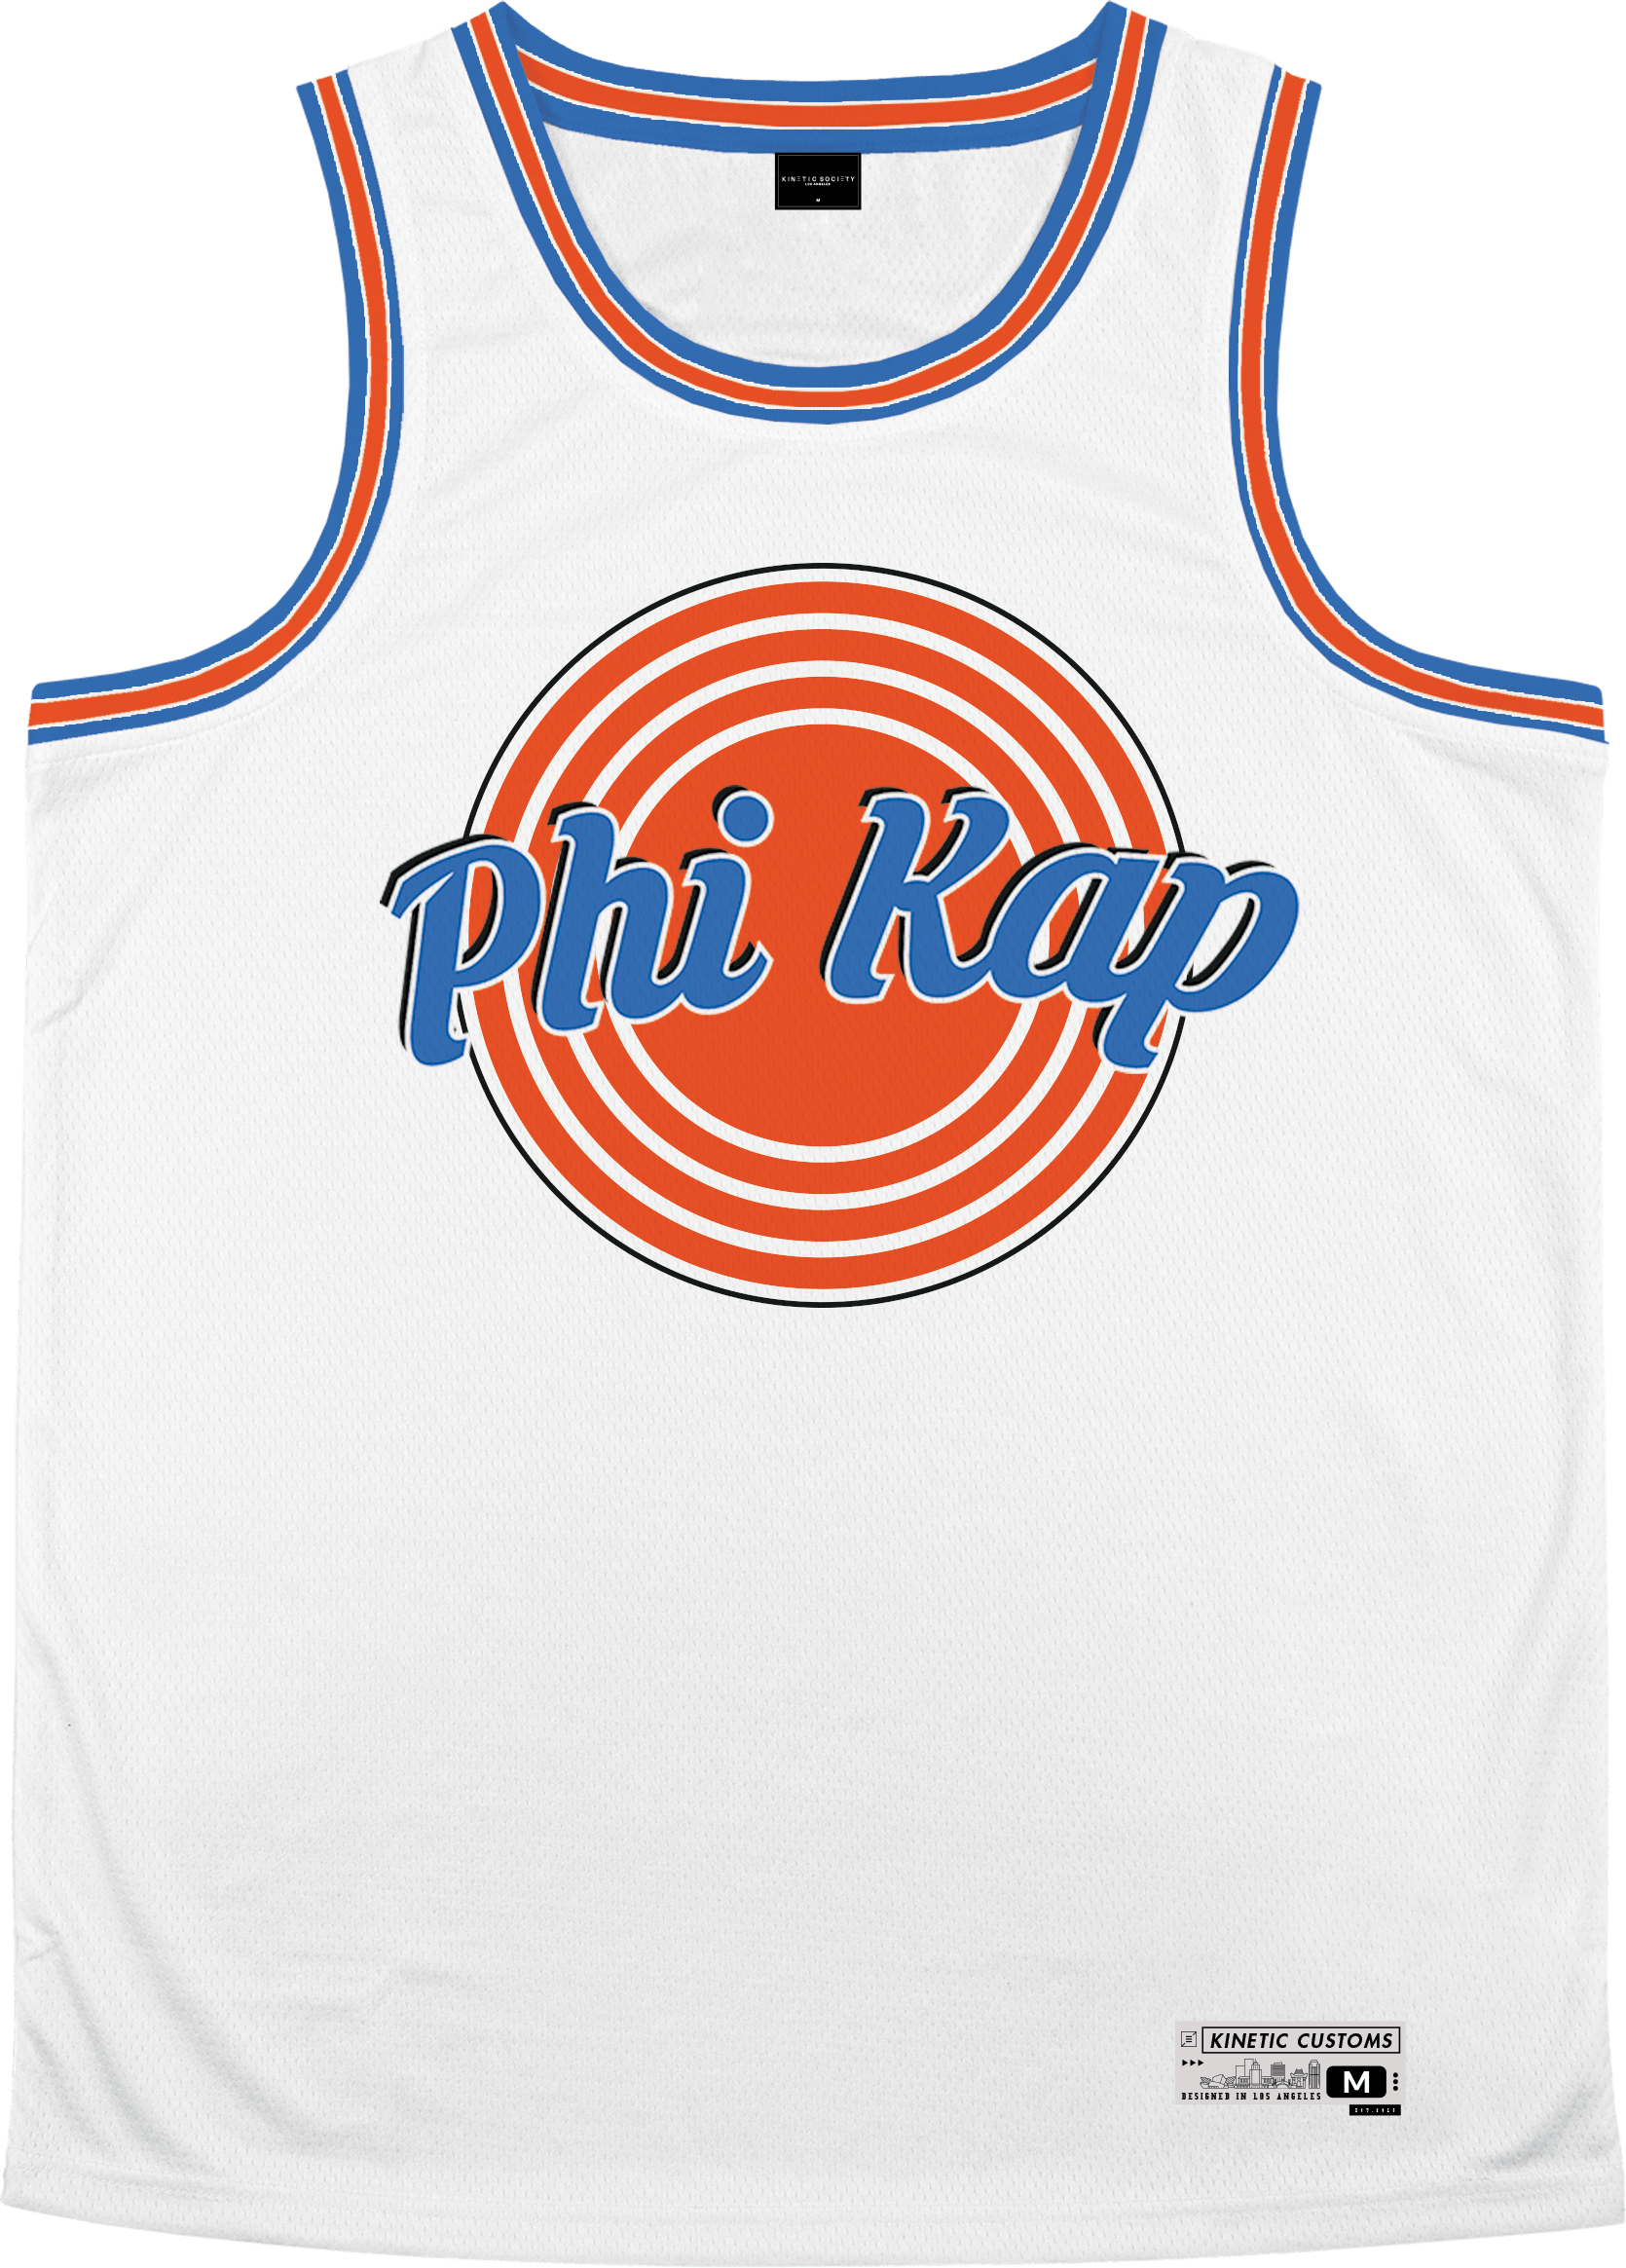 Phi Kappa Sigma - Vintage Basketball Jersey Premium Basketball Kinetic Society LLC 